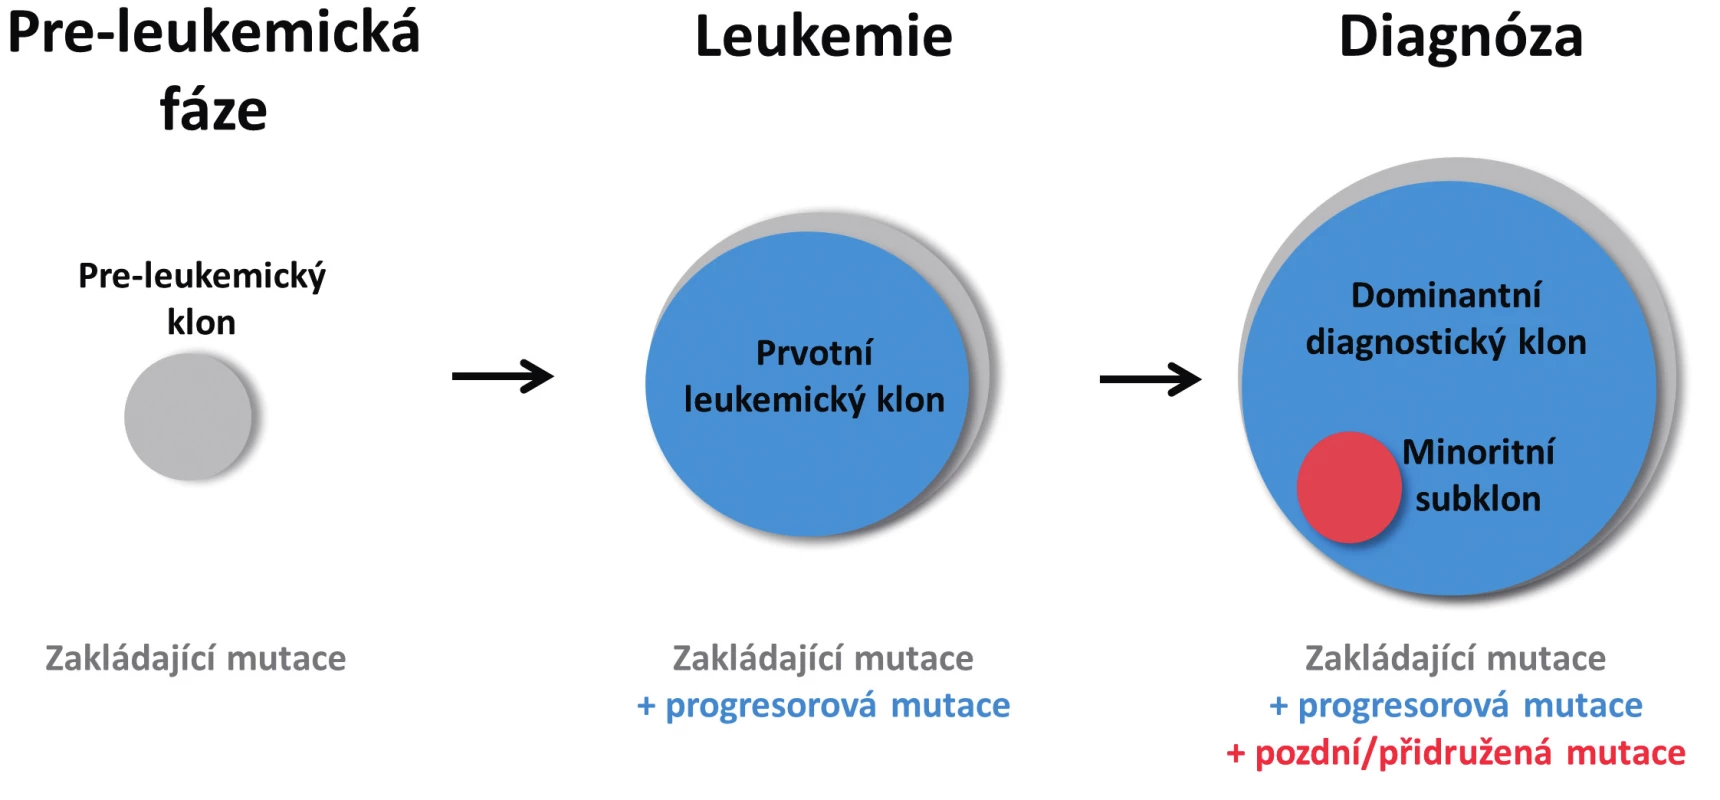 Zjednodušené schéma vícekrokového postupného vývoje AML
Z hematopoetického klonu nesoucího zakládající mutaci vzniká po získání druhé, progresorové mutace klon s plně leukemogenní kapacitou. Po výskytu další mutace u jedné z leukemických buněk vzniká subklon, který v době diagnózy představuje pouze minoritní část leukemických buněk. Velikost kruhů vyjadřuje poměrné zastoupení jednotlivých mutací.